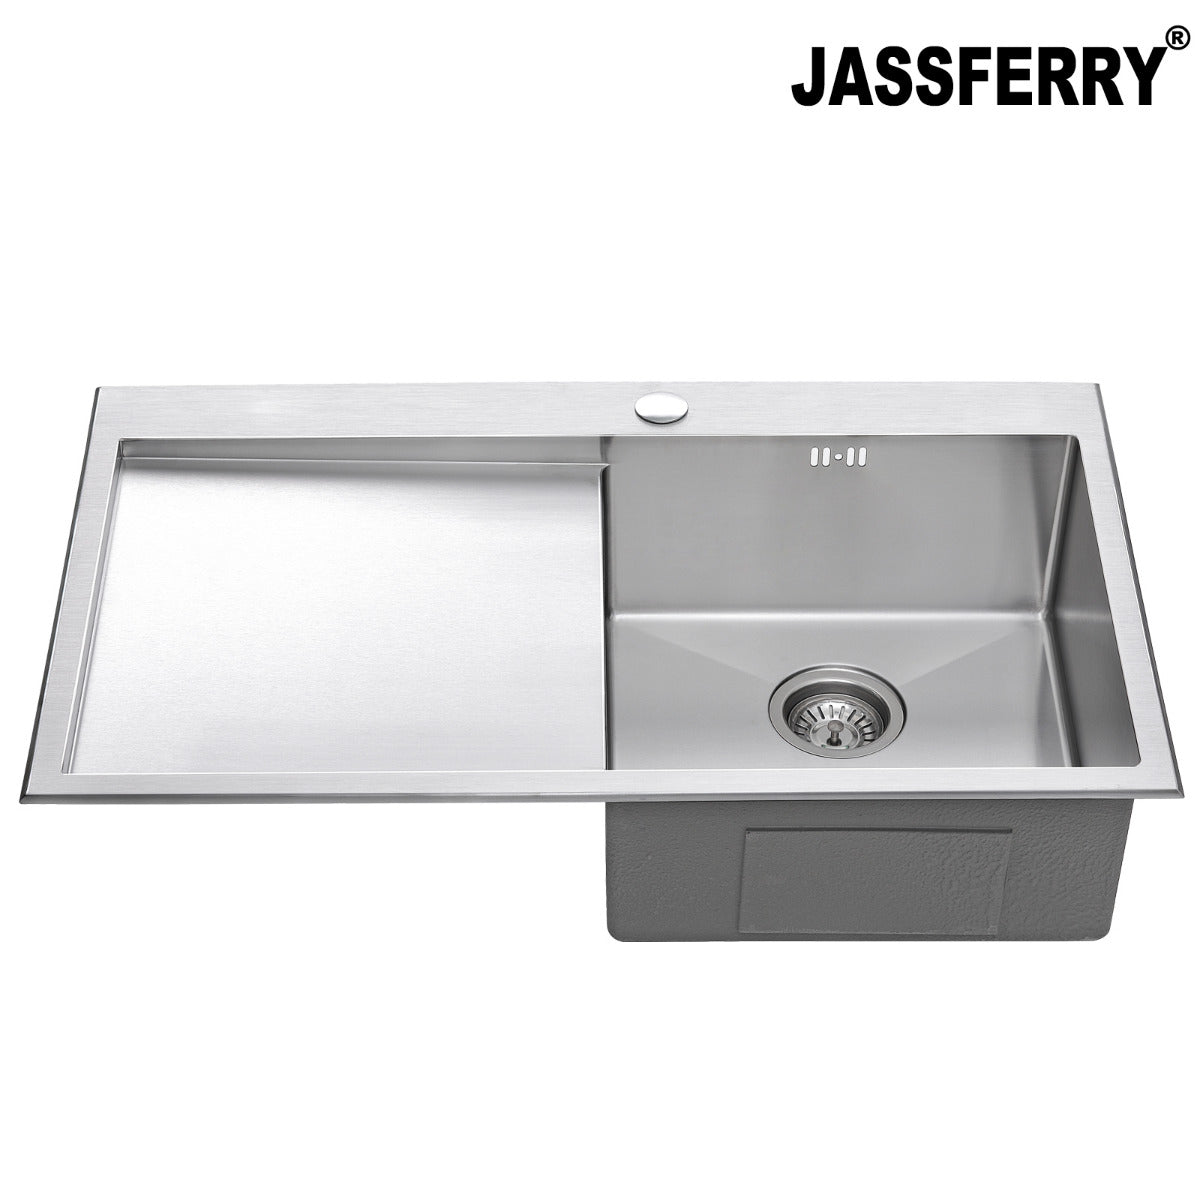 JassferryJASSFERRY Handcrafted Stainless Steel Kitchen Sink Inset 1 Bowl Lefthand DrainerKitchen Sinks